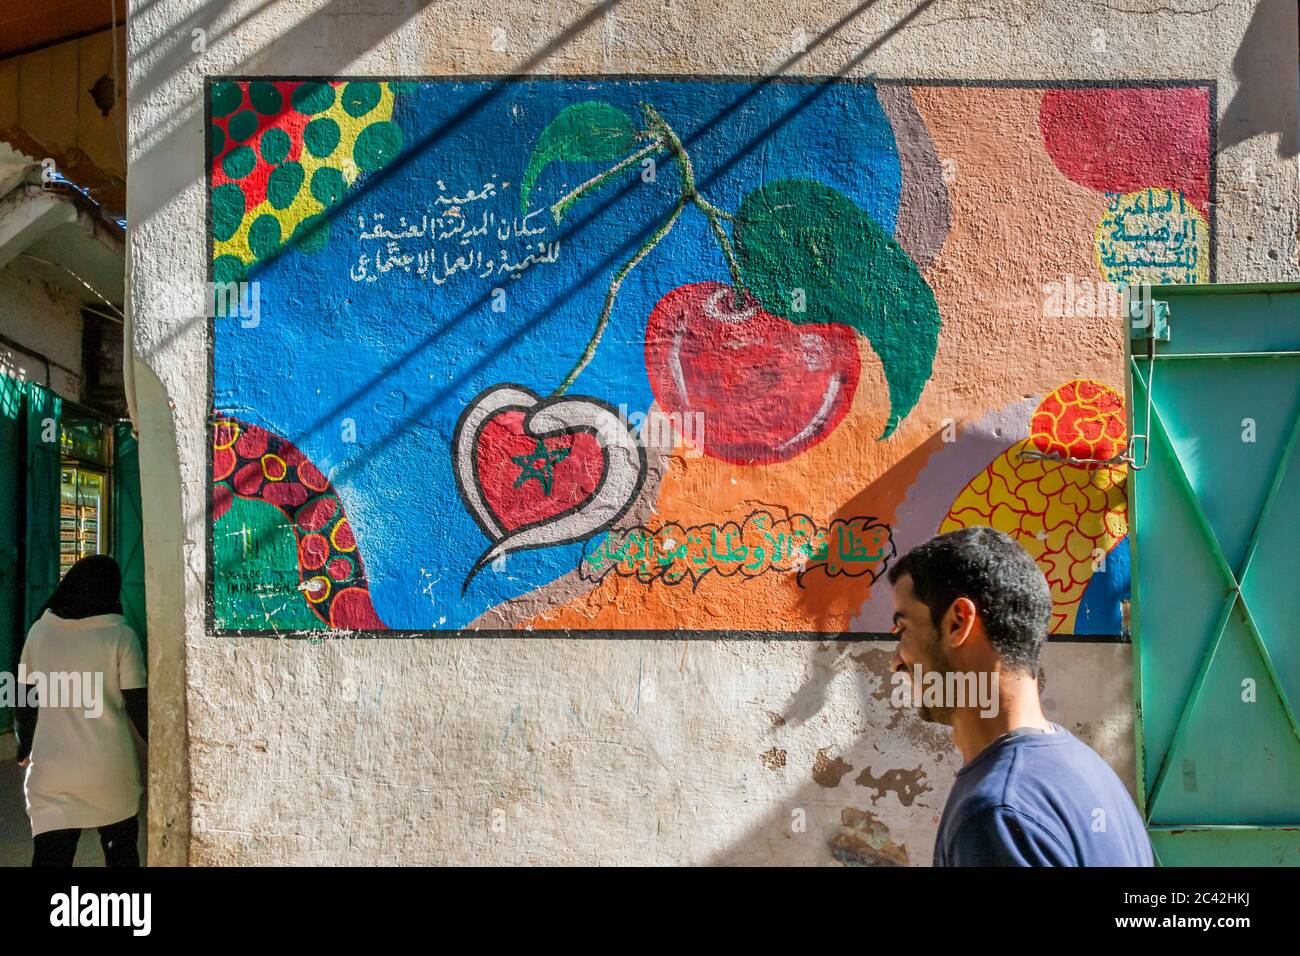 Impressions du Maroc: Peinture murale sur une salle de marché Banque D'Images